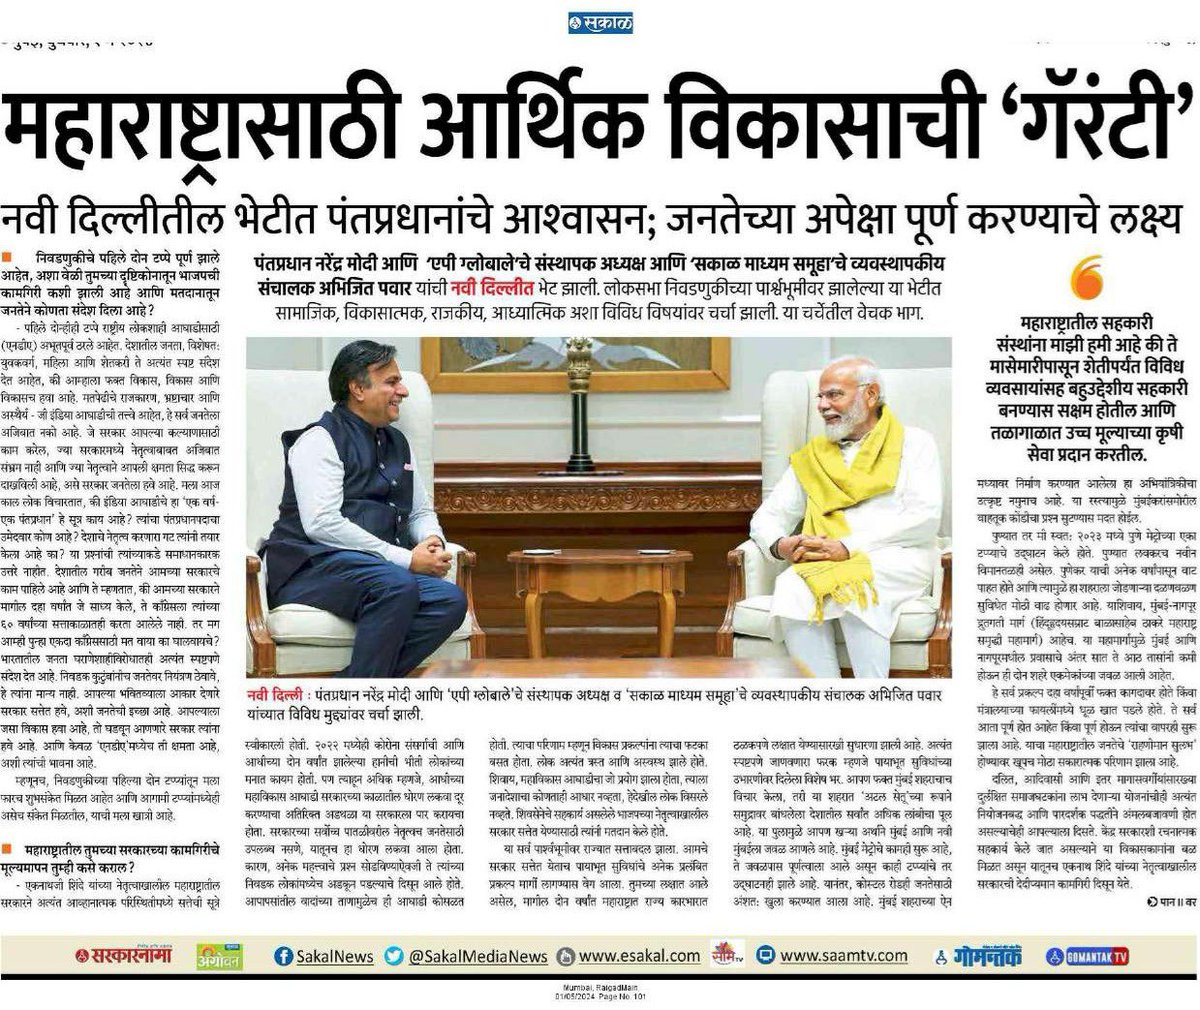 PM Shri @narendramodi ji's interview with @SakalMediaNews